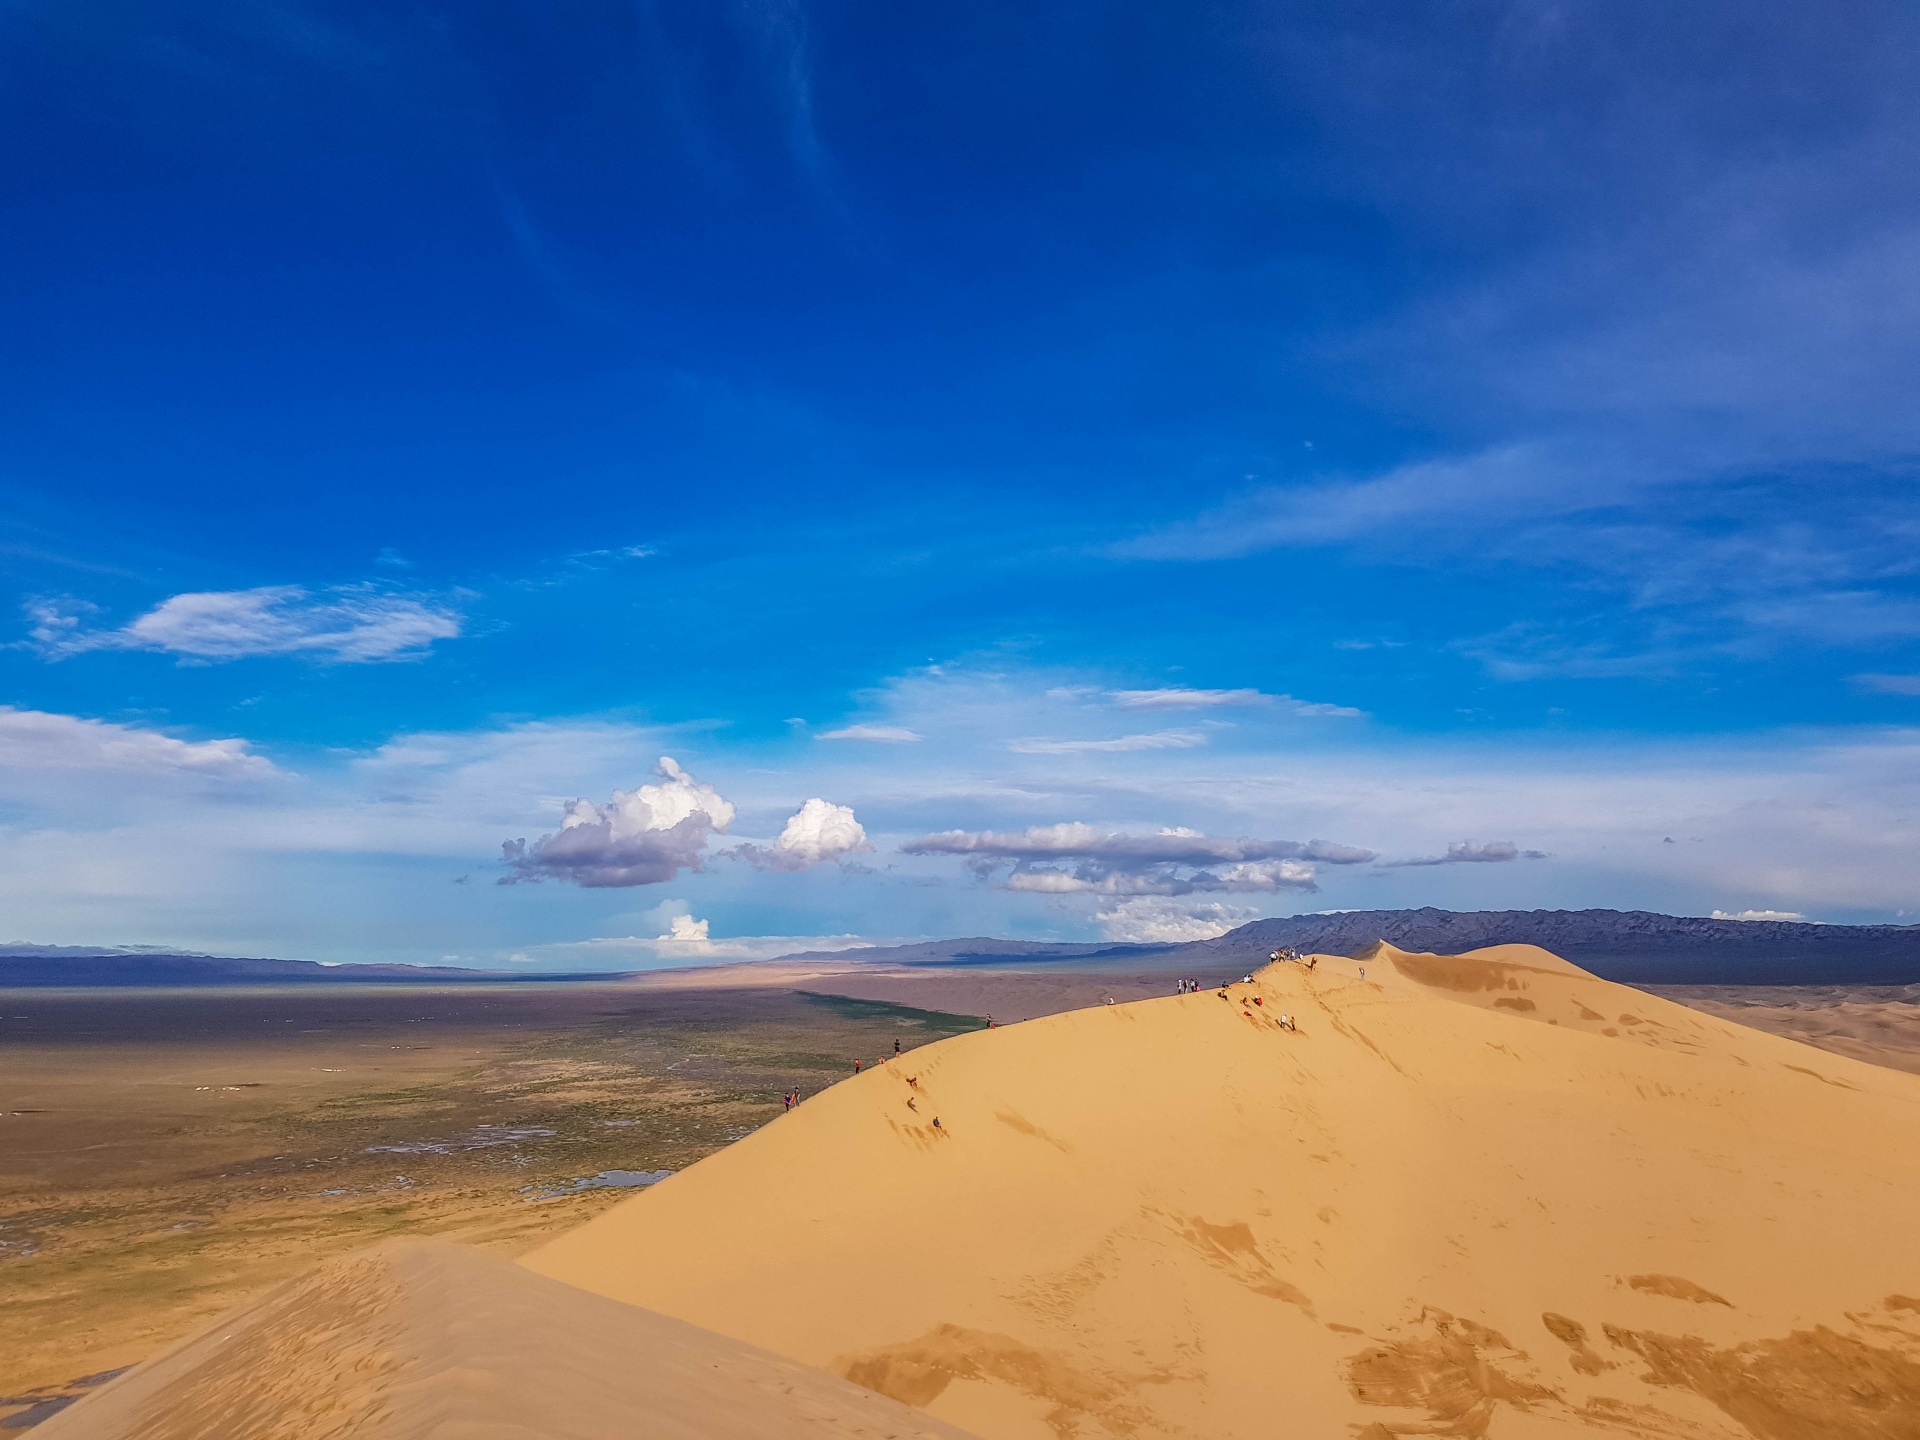 Gobi Desert, Sliding dunes, Wandering sneakers, Desert wanderlust, 1920x1440 HD Desktop